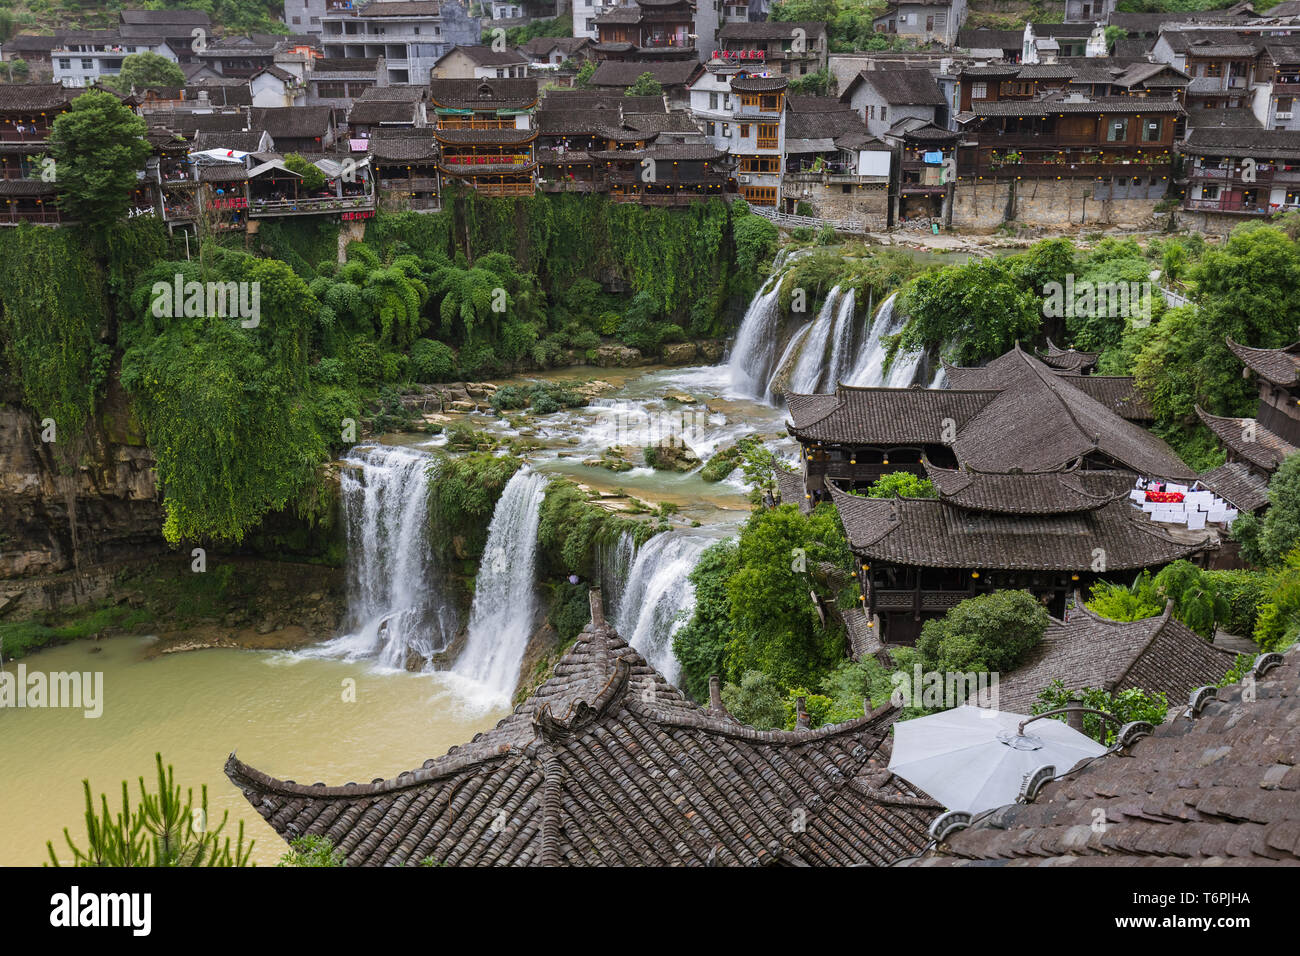 Furong ancient village and waterfall - Hunan China Stock Photo